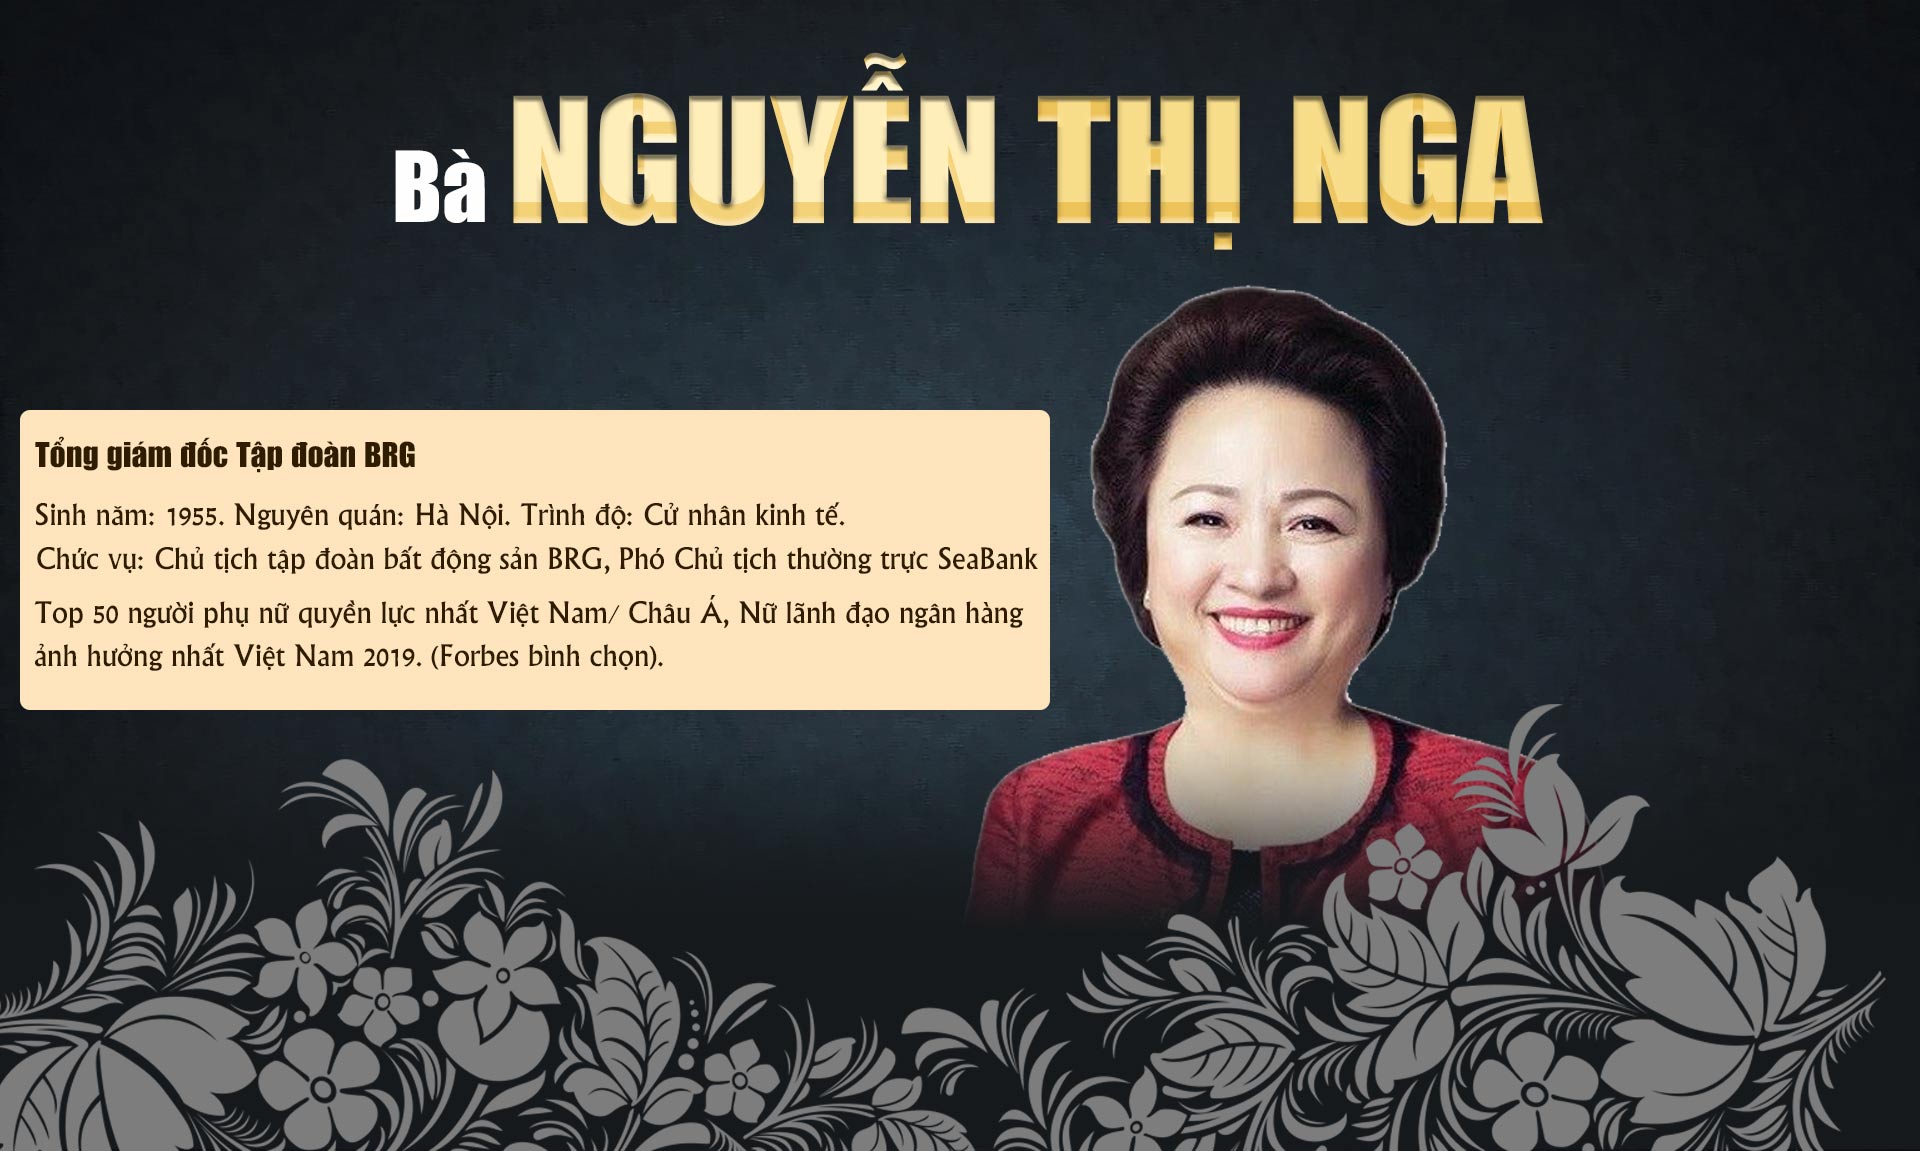 10 phụ nữ Việt gây choáng bởi sự giàu có, giỏi giang và quyền lực - 8